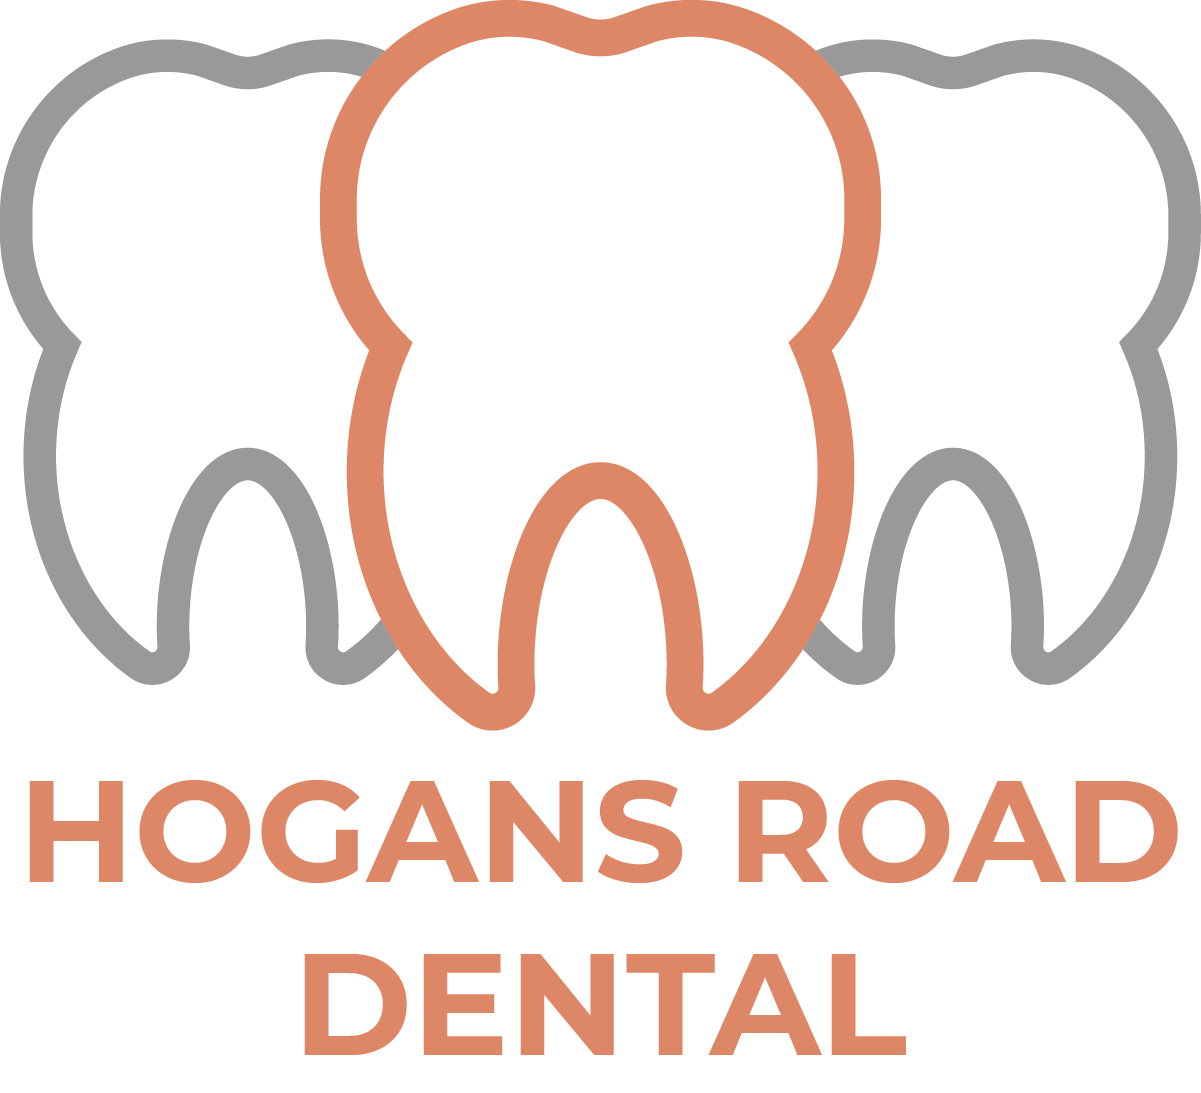 Hogans Road Dental | Hoppers Crossing &amp; Werribee Dentist since 1988